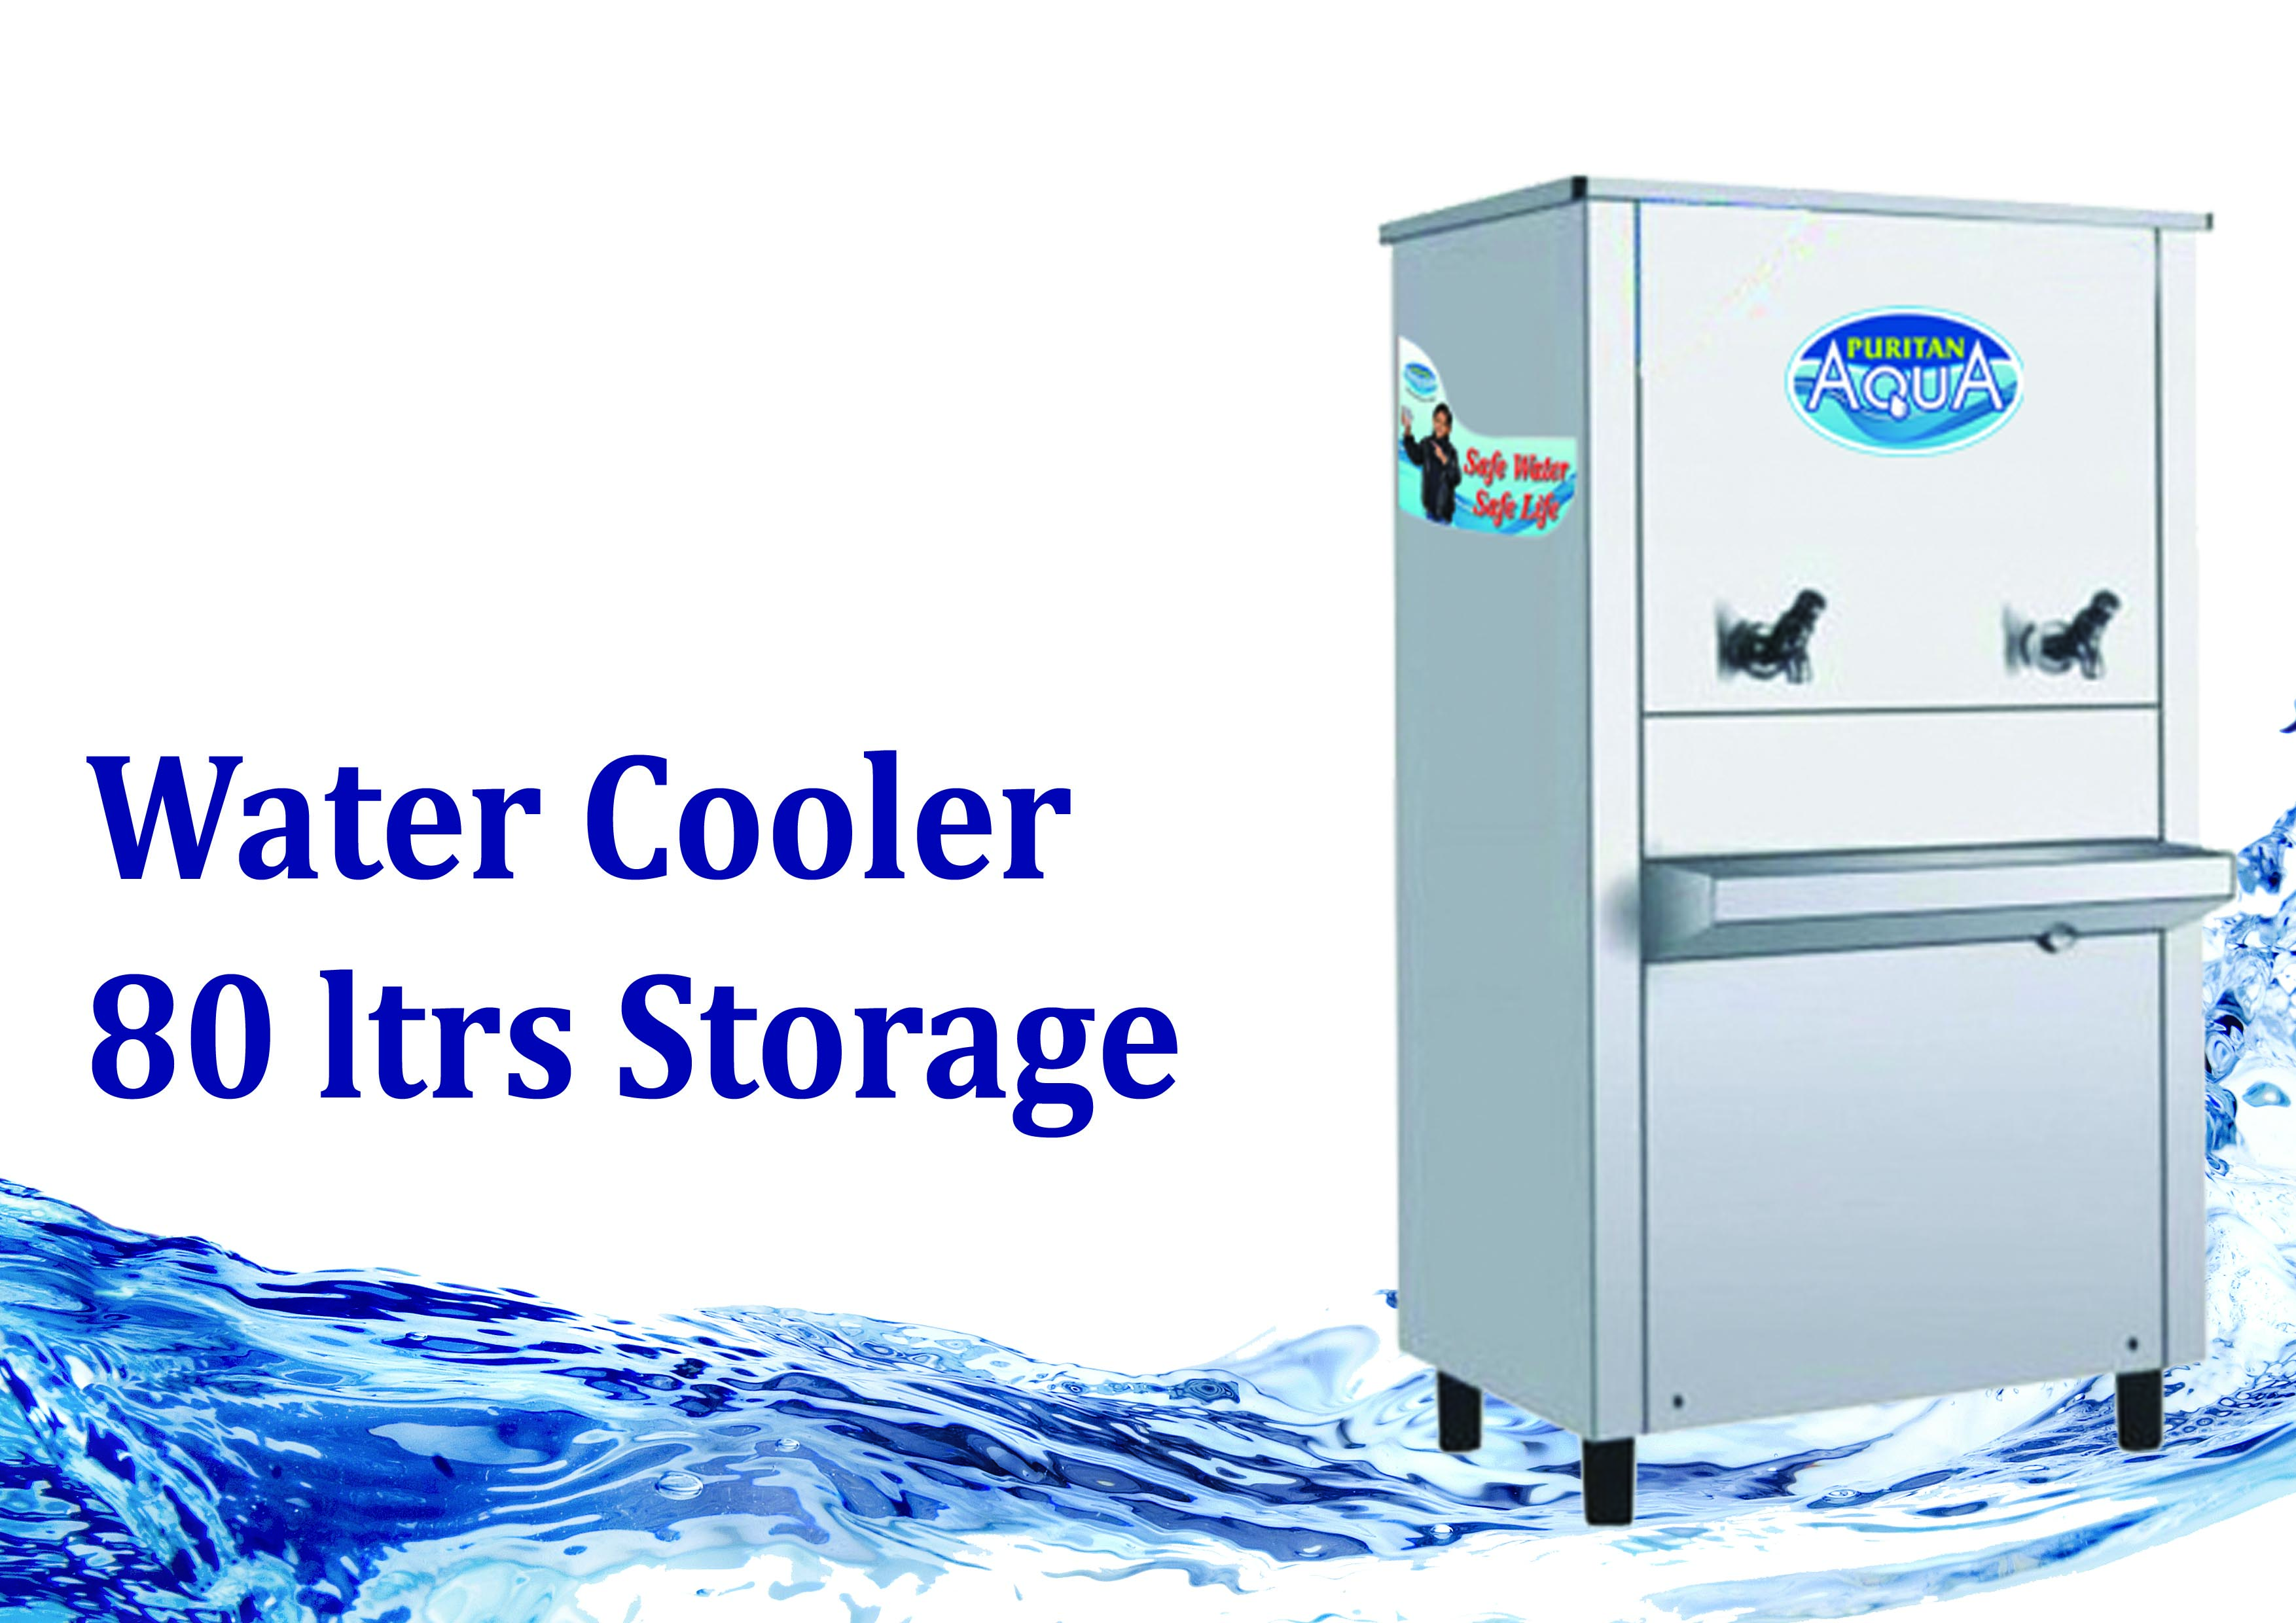 Commercial Water Cooler  | PURITAN AQUA RO WATER SOLUTIONS | Water cooler dealer in hyderabad, Best water cooler for commercial, best storage water cooler, water cooler whole sale price dealer in hyderabad - GL18851